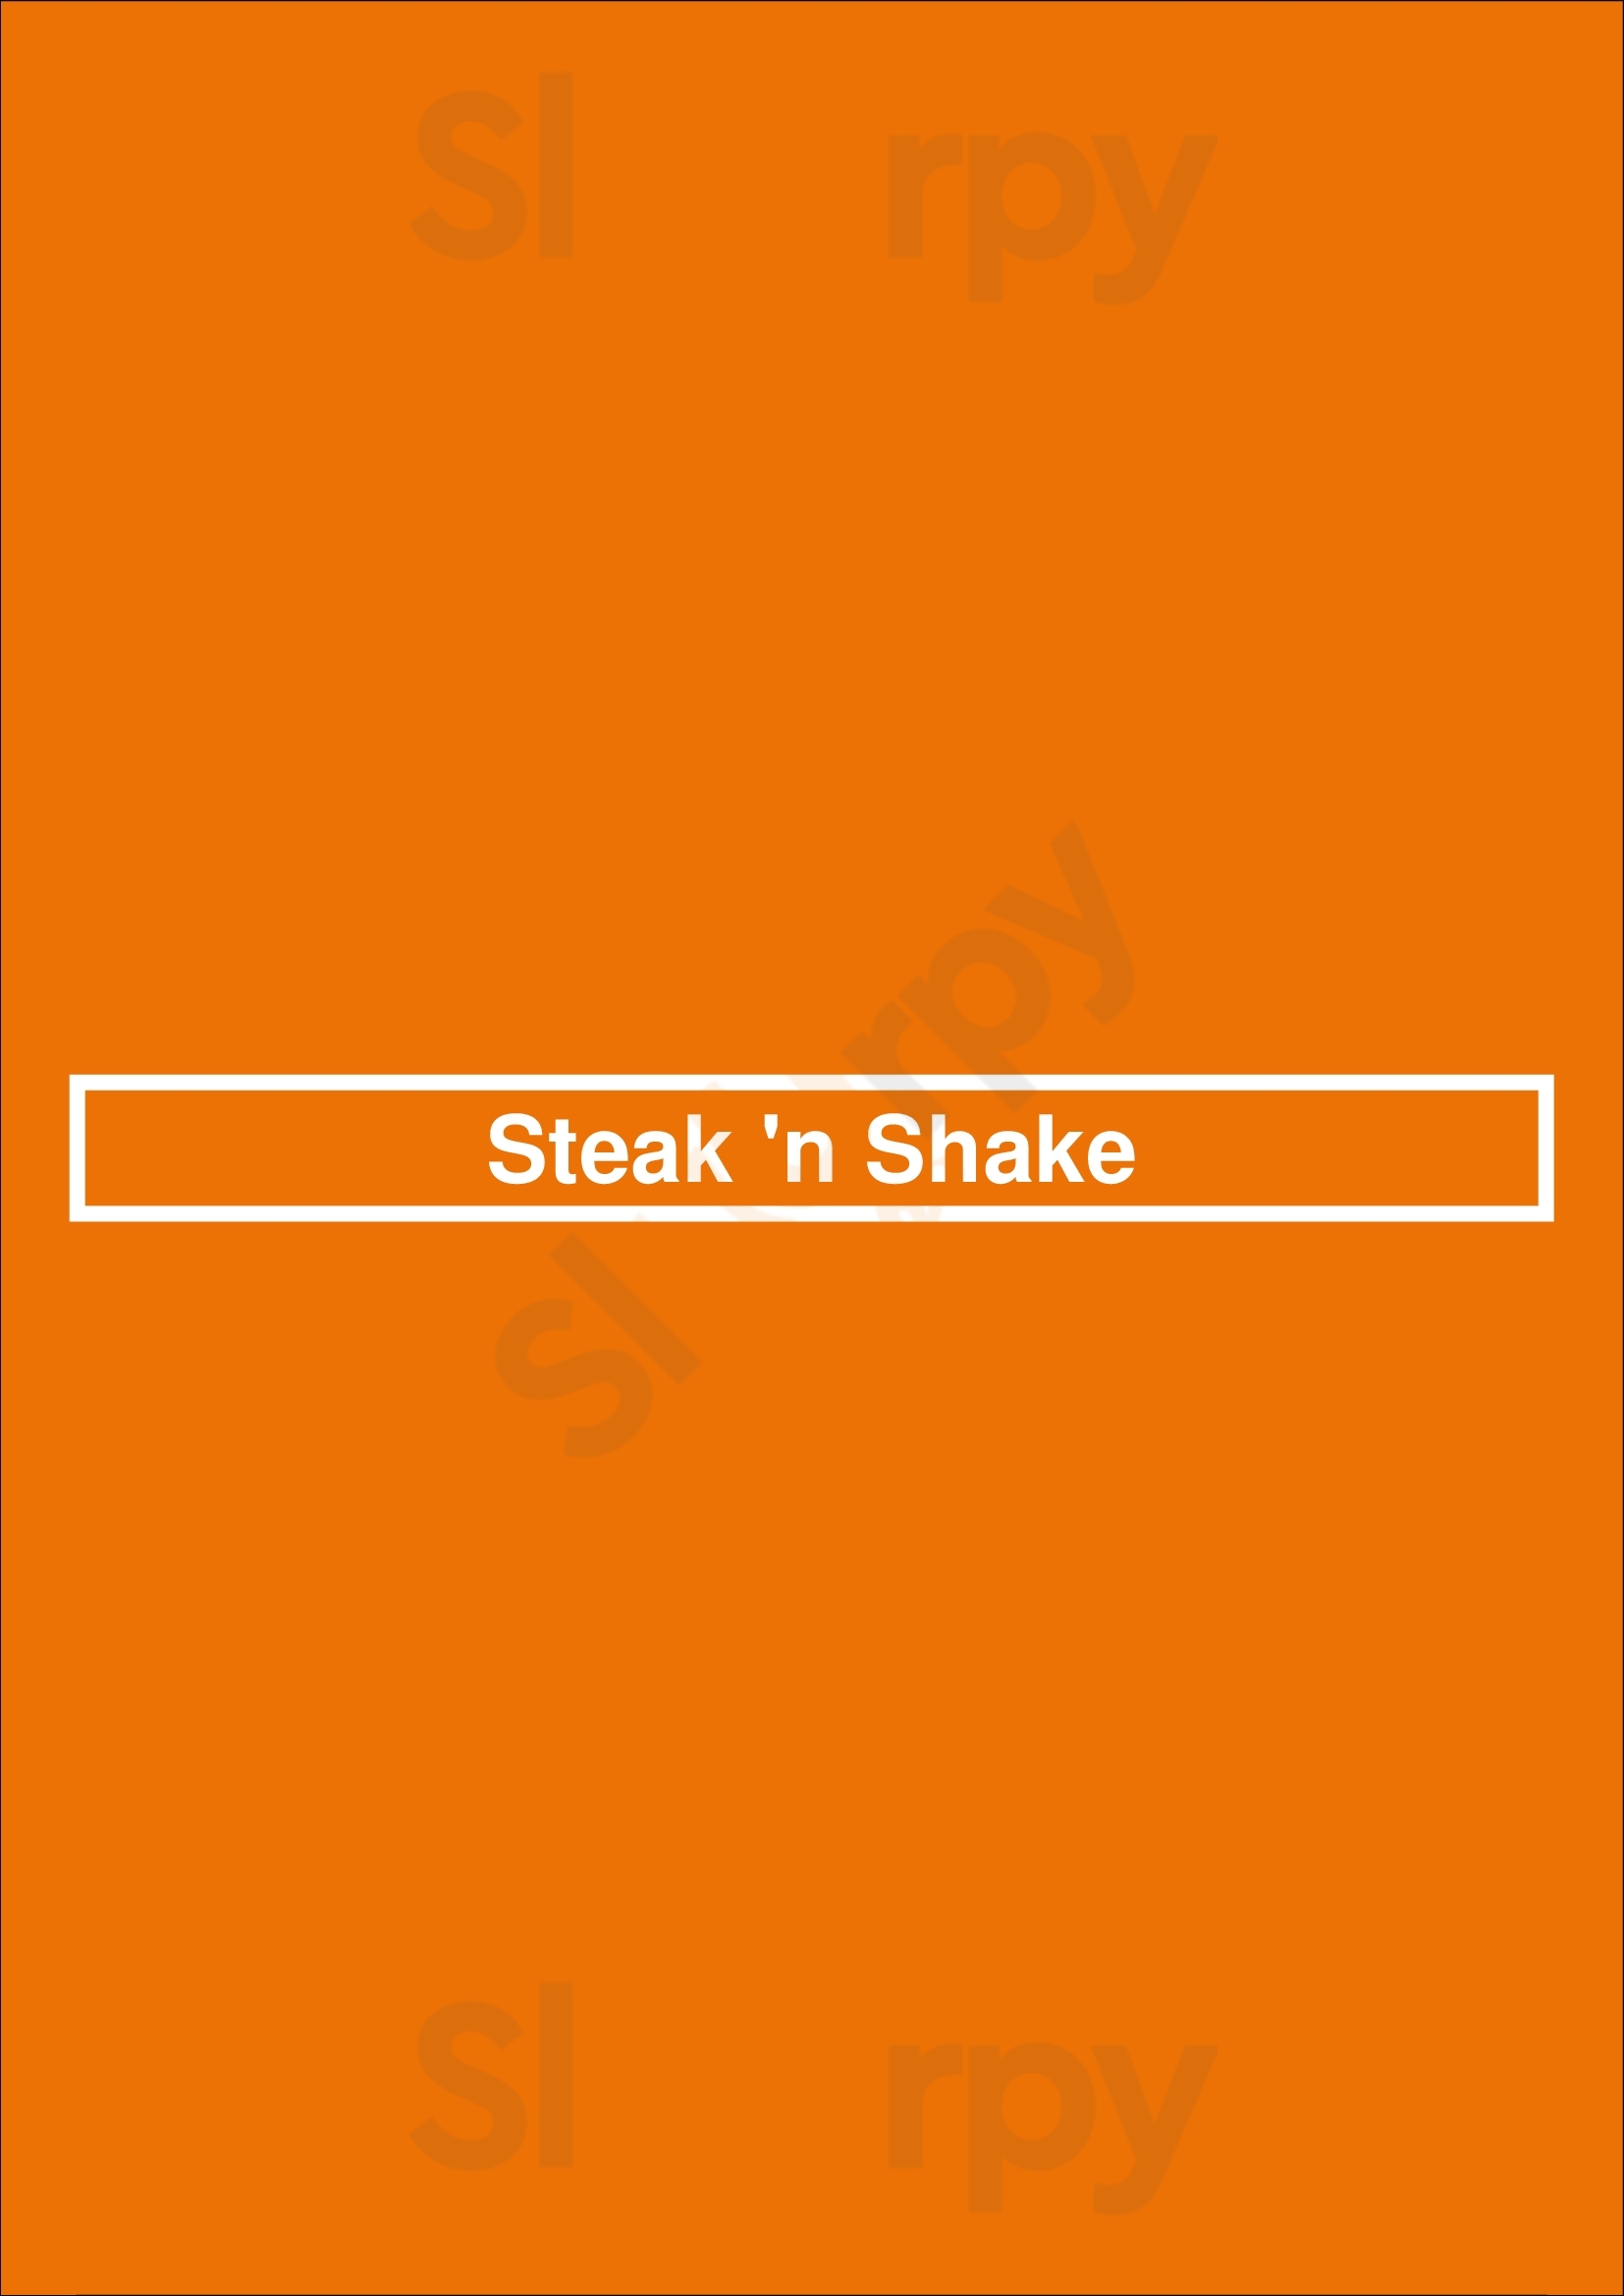 Steak 'n Shake Jacksonville Menu - 1